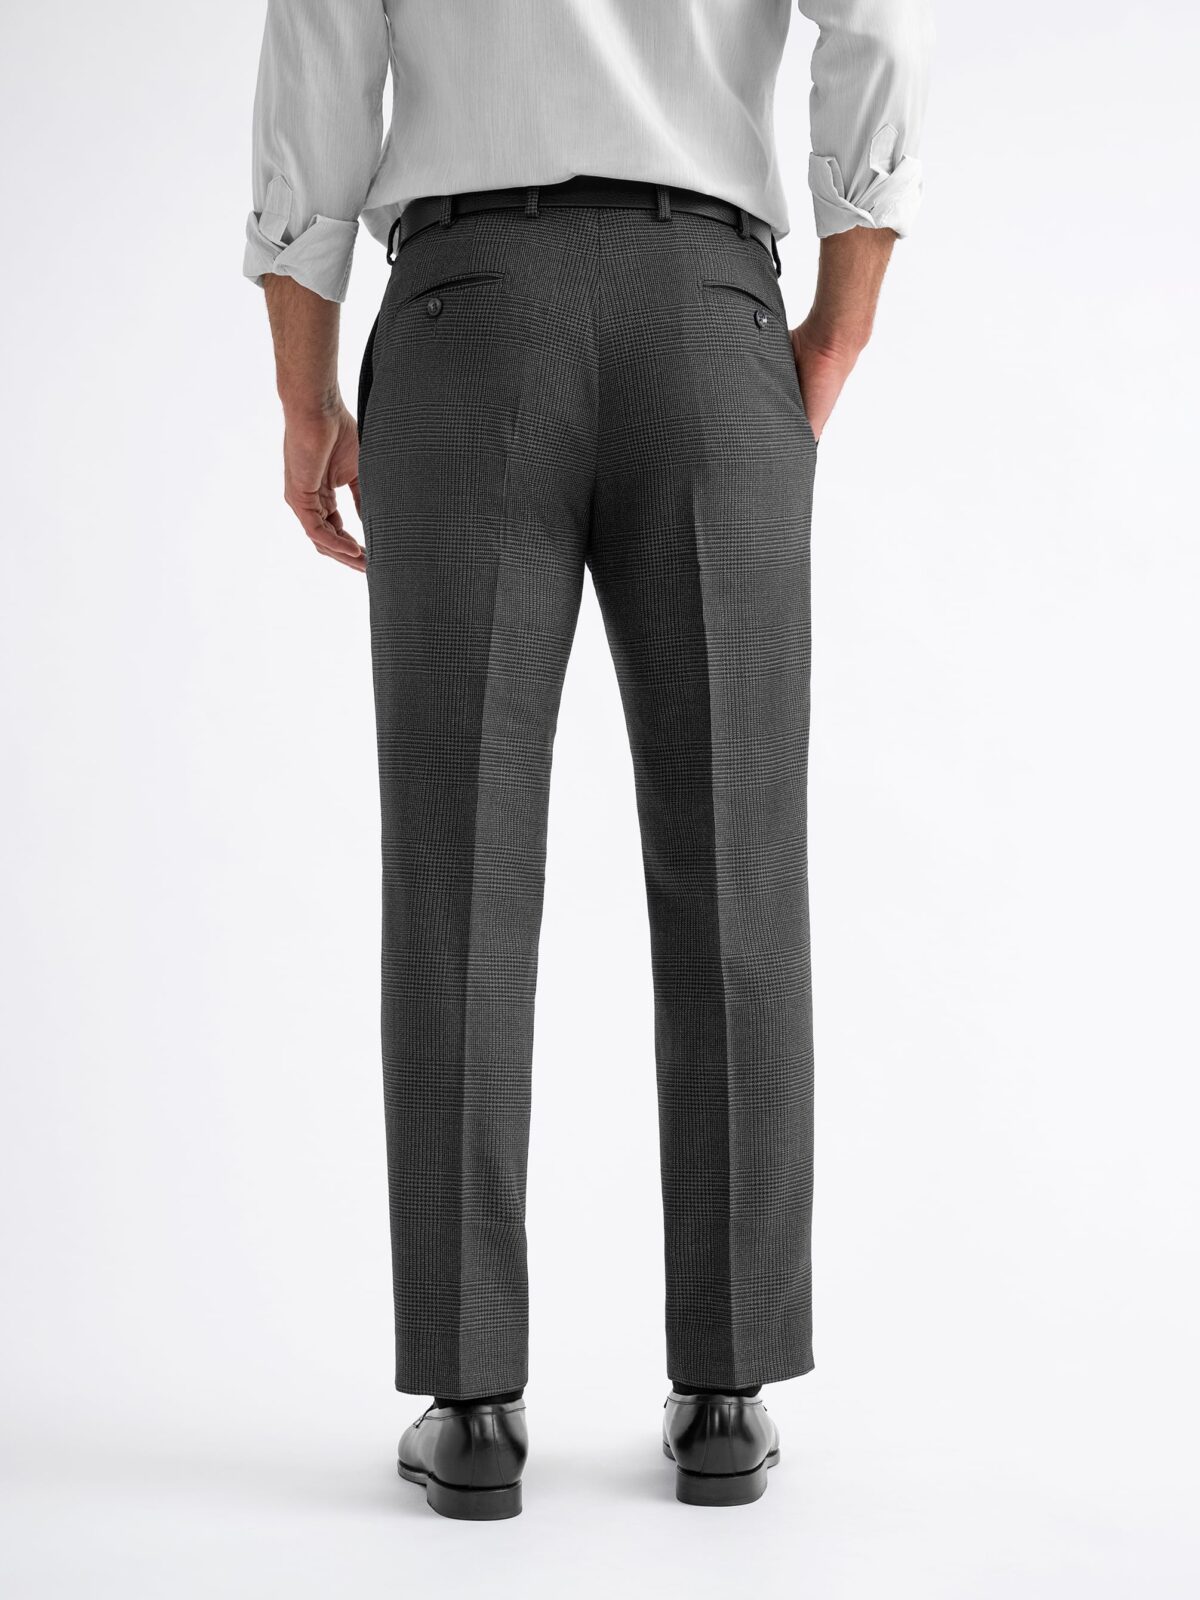 Men's Fashion Plaid Pants (Beige & Copper)